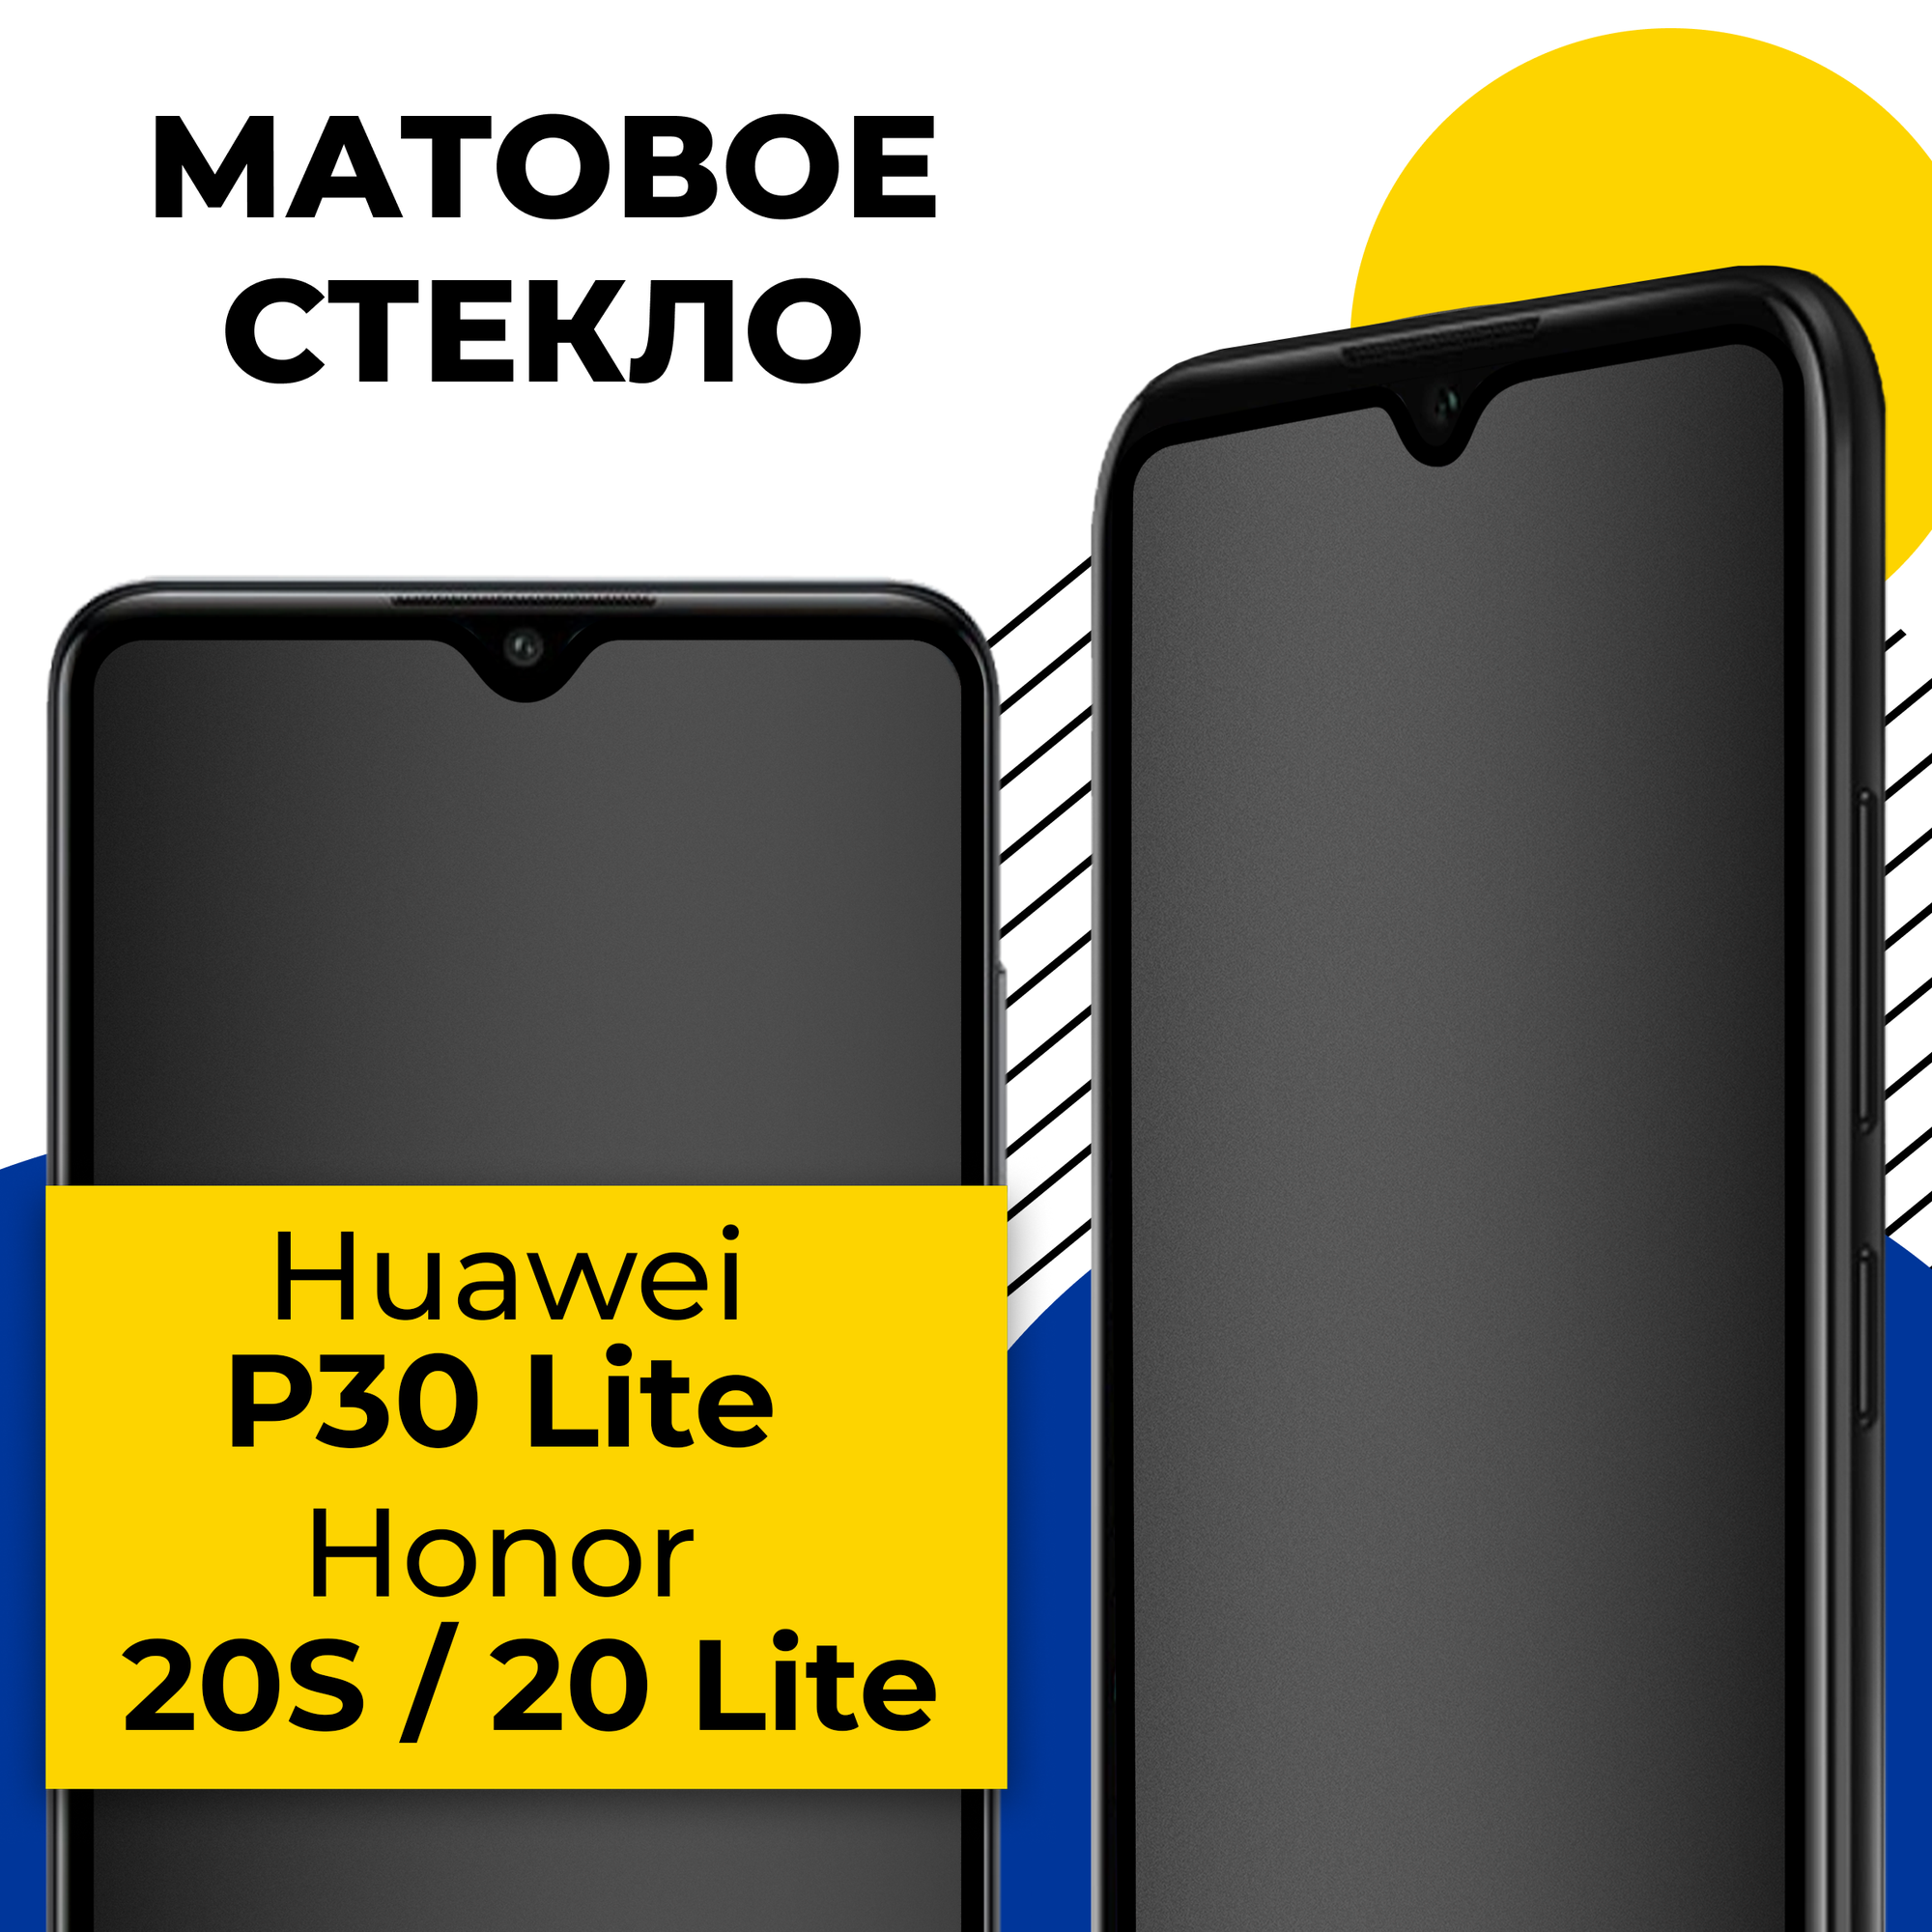 Матовое защитное стекло для телефона Huawei P30 Lite Honor 20S Honor 20 Lite / Противоударное стекло на смартфон Хуавей Р30 Лайт Хонор 20С 20 Лайт